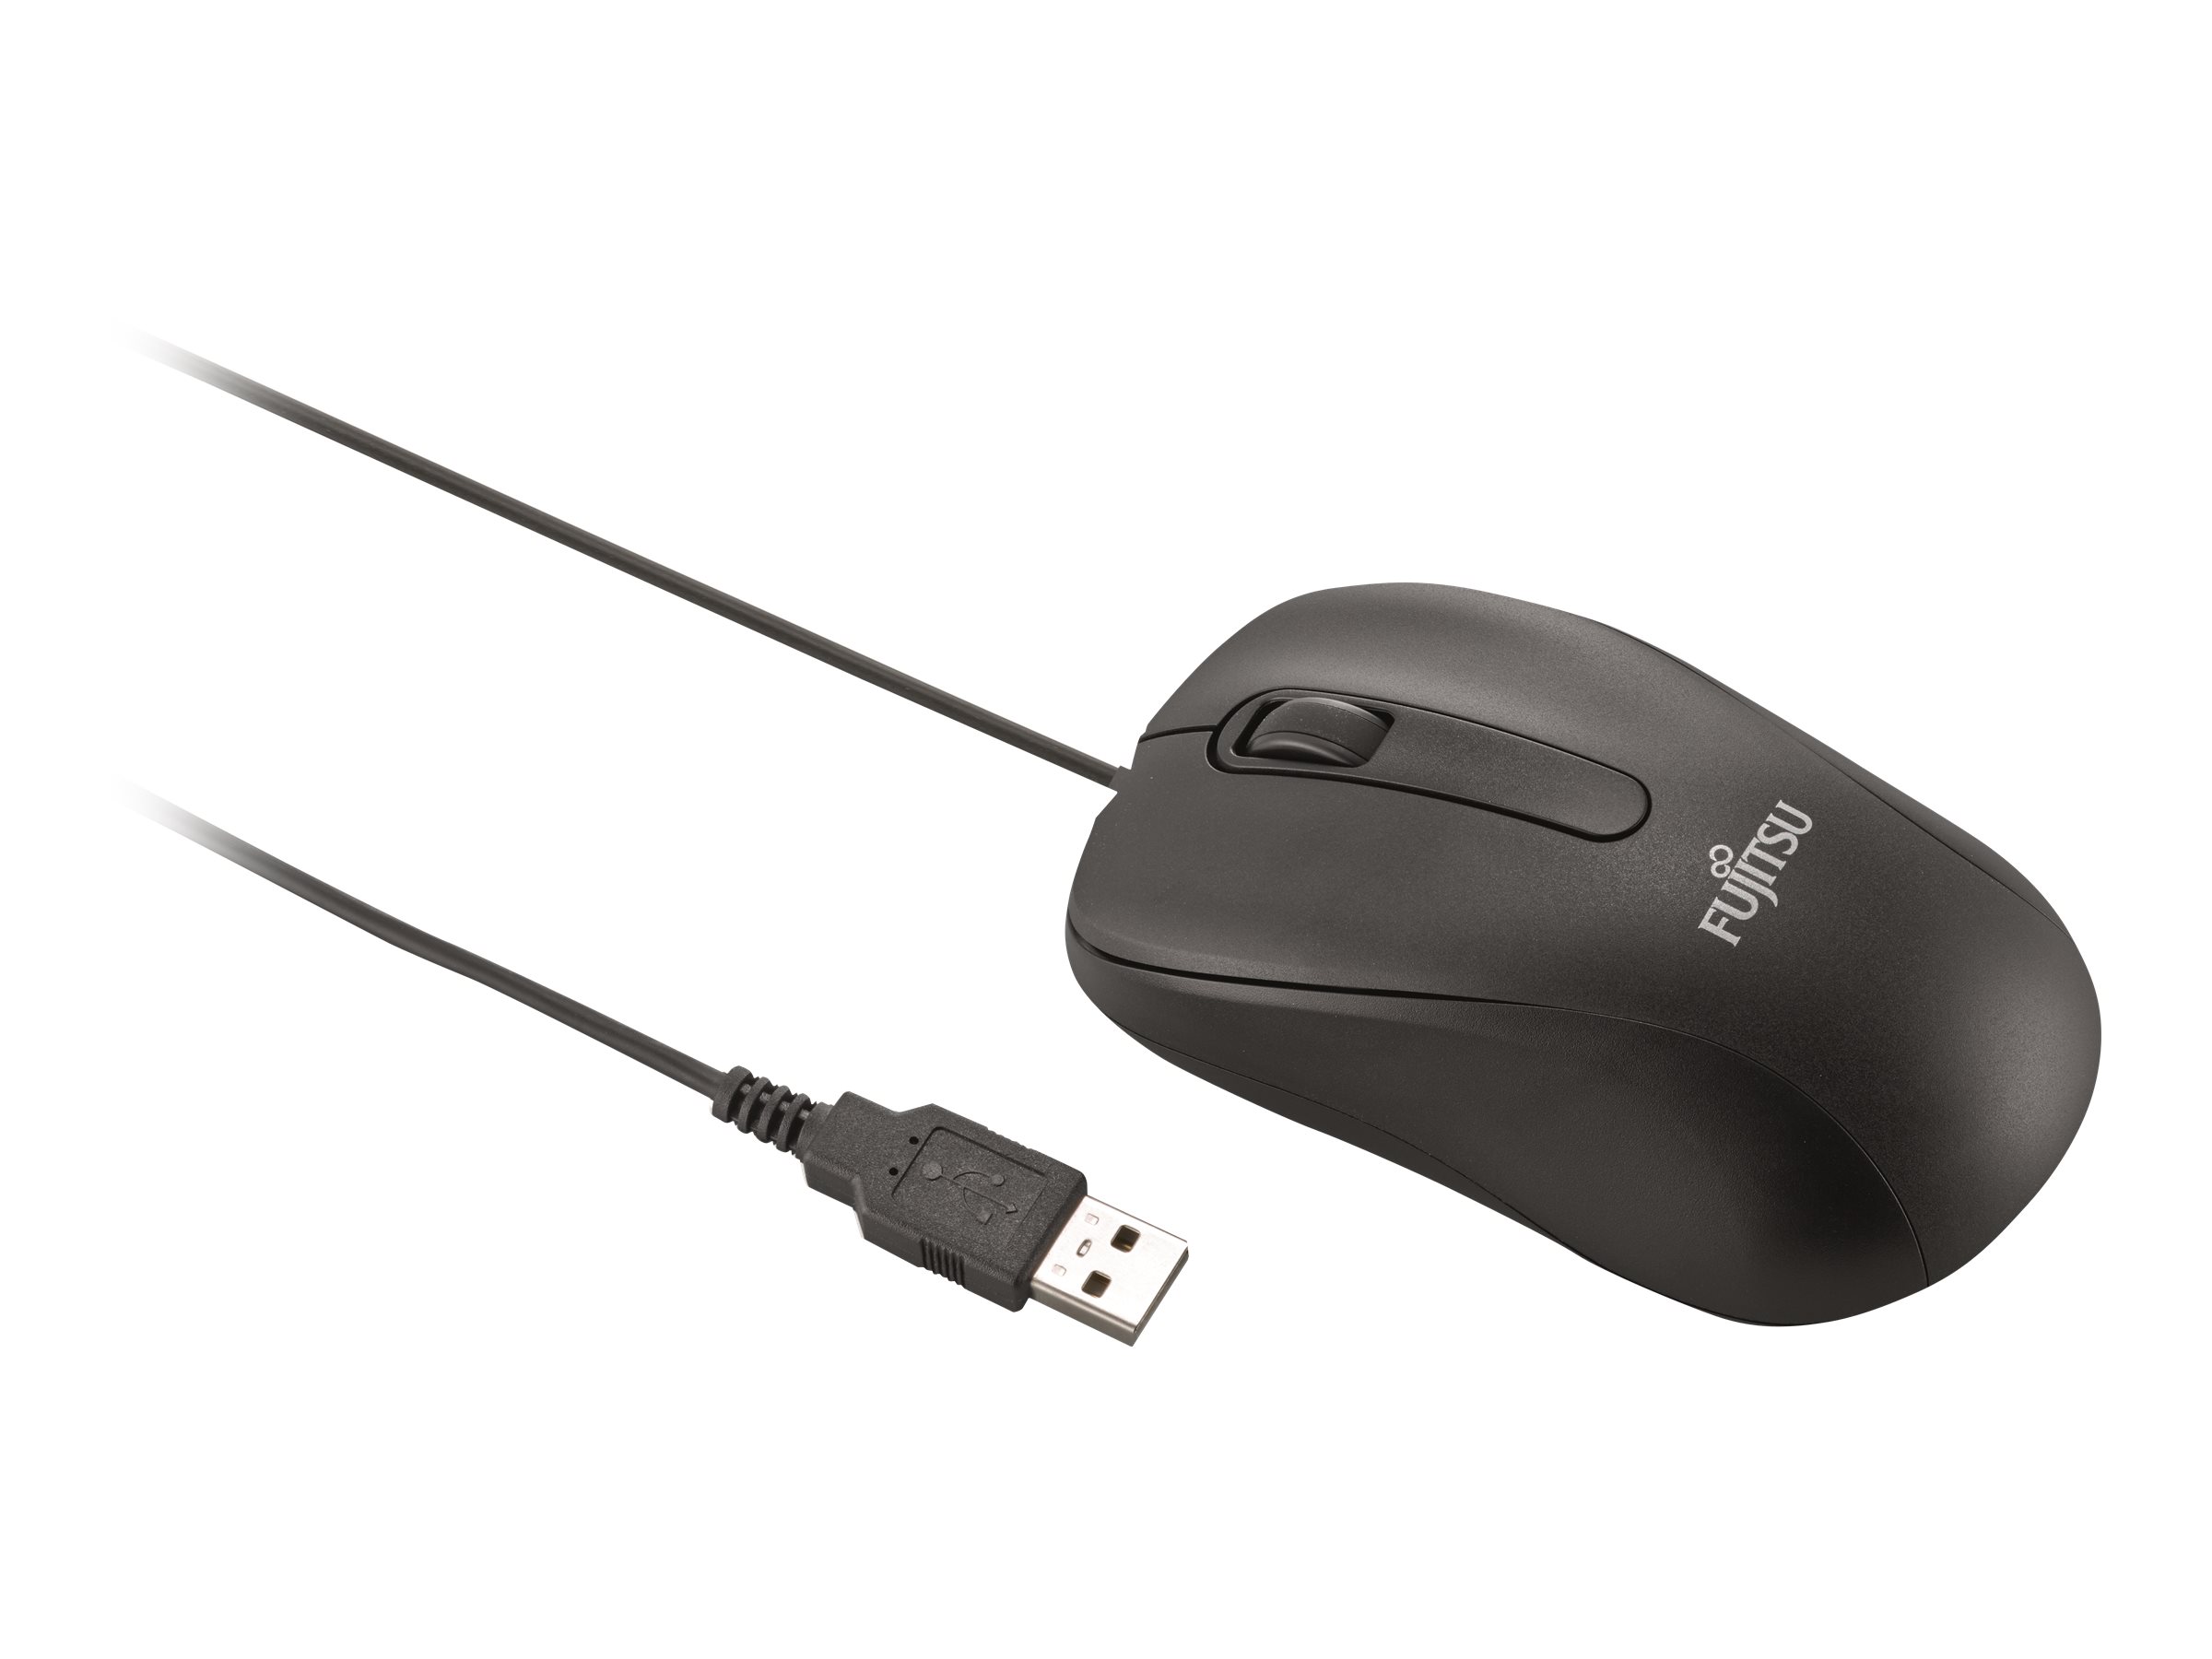 Fujitsu M520 - Maus - rechts- und linkshndig - optisch - 3 Tasten - kabelgebunden